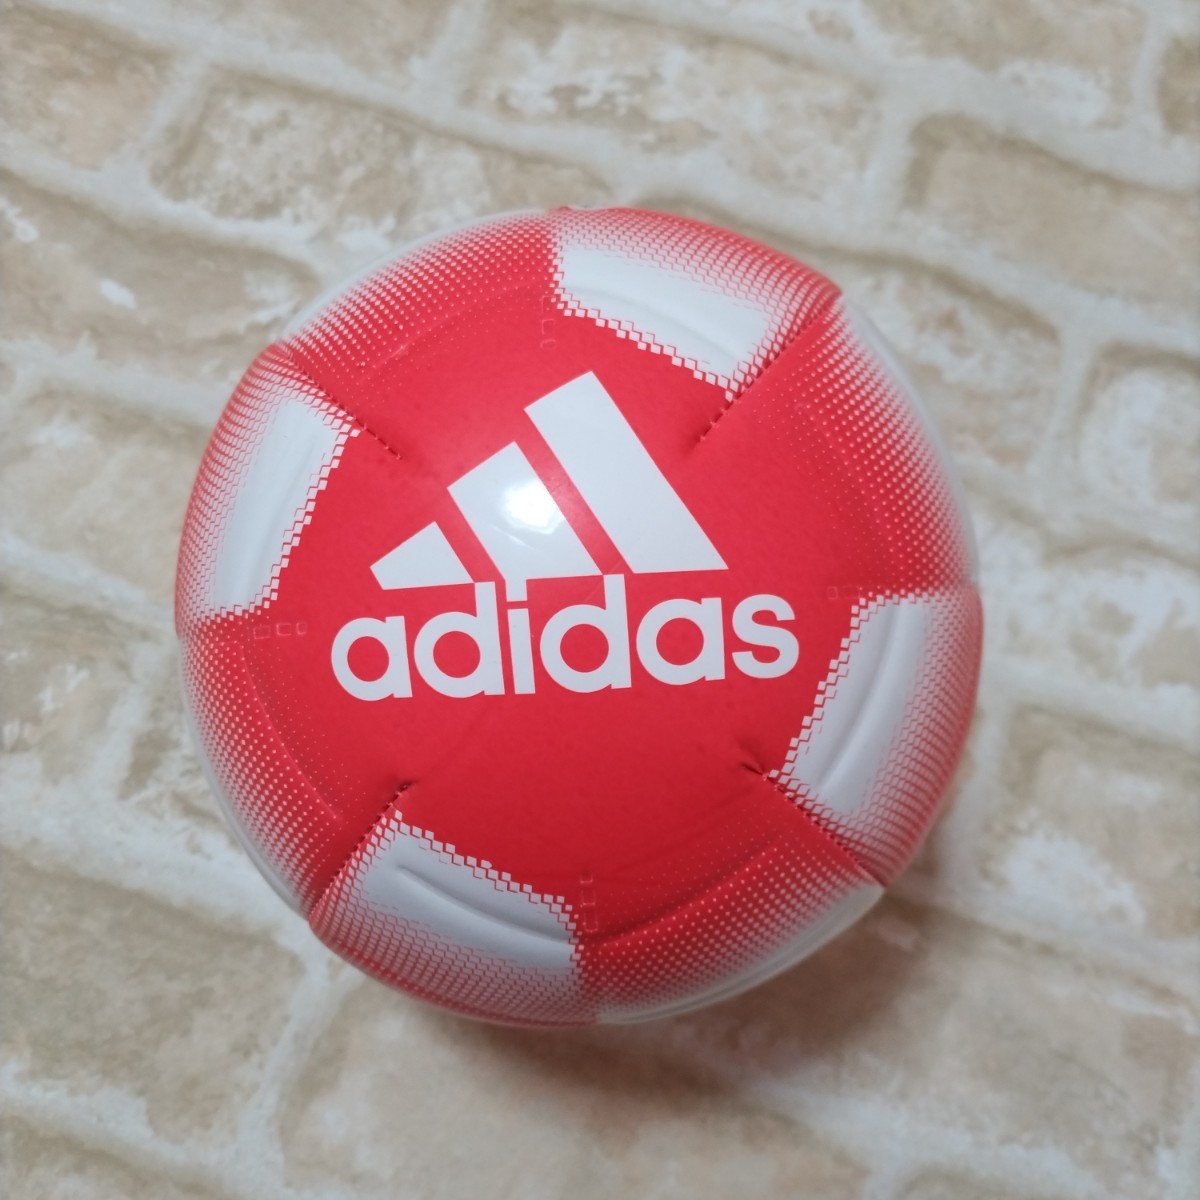 adidas Adidas футбольный мяч 3 номер лампочка бесплатная доставка 